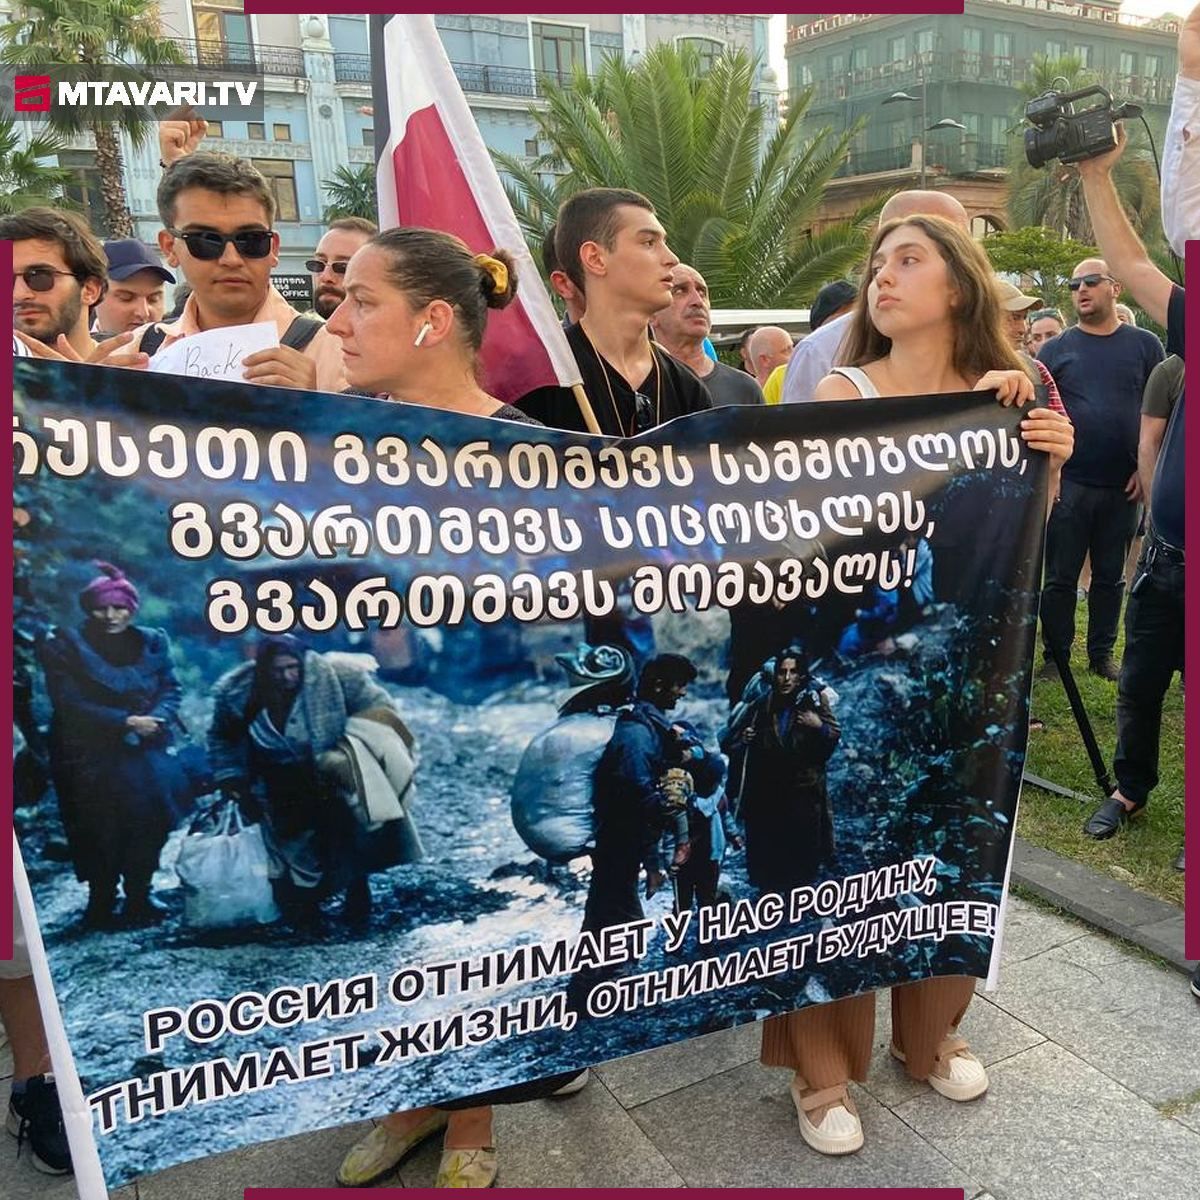 "Абхазию мы от вас освободили!" - туристы из РФ показали себя в Грузии